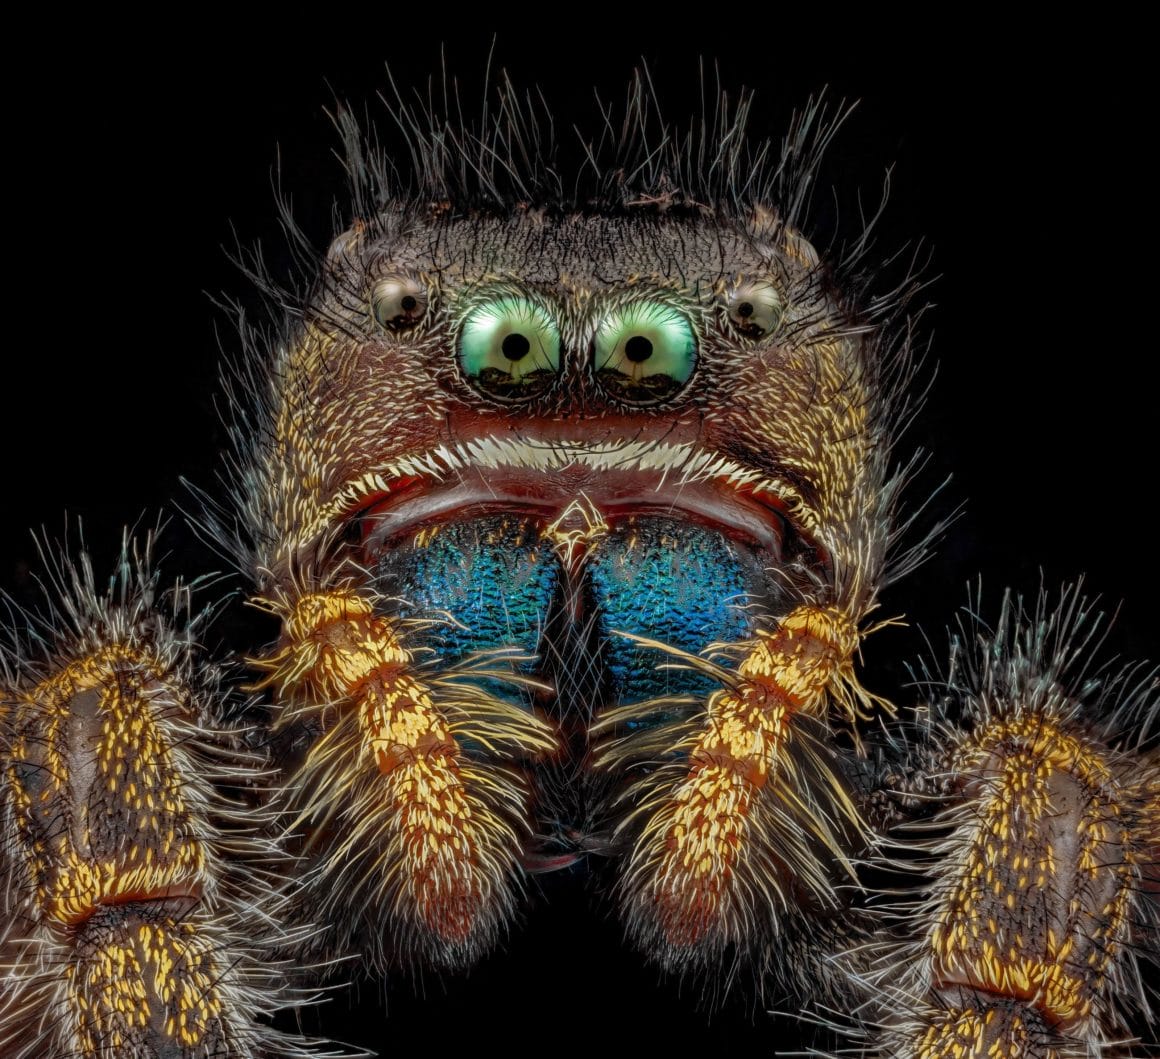 Araignée sauteuse audacieuse vue au microscope. Elle a des yeux vert et une bouche rougeâtre gonflée ainsi qu'un abdomen bleu.